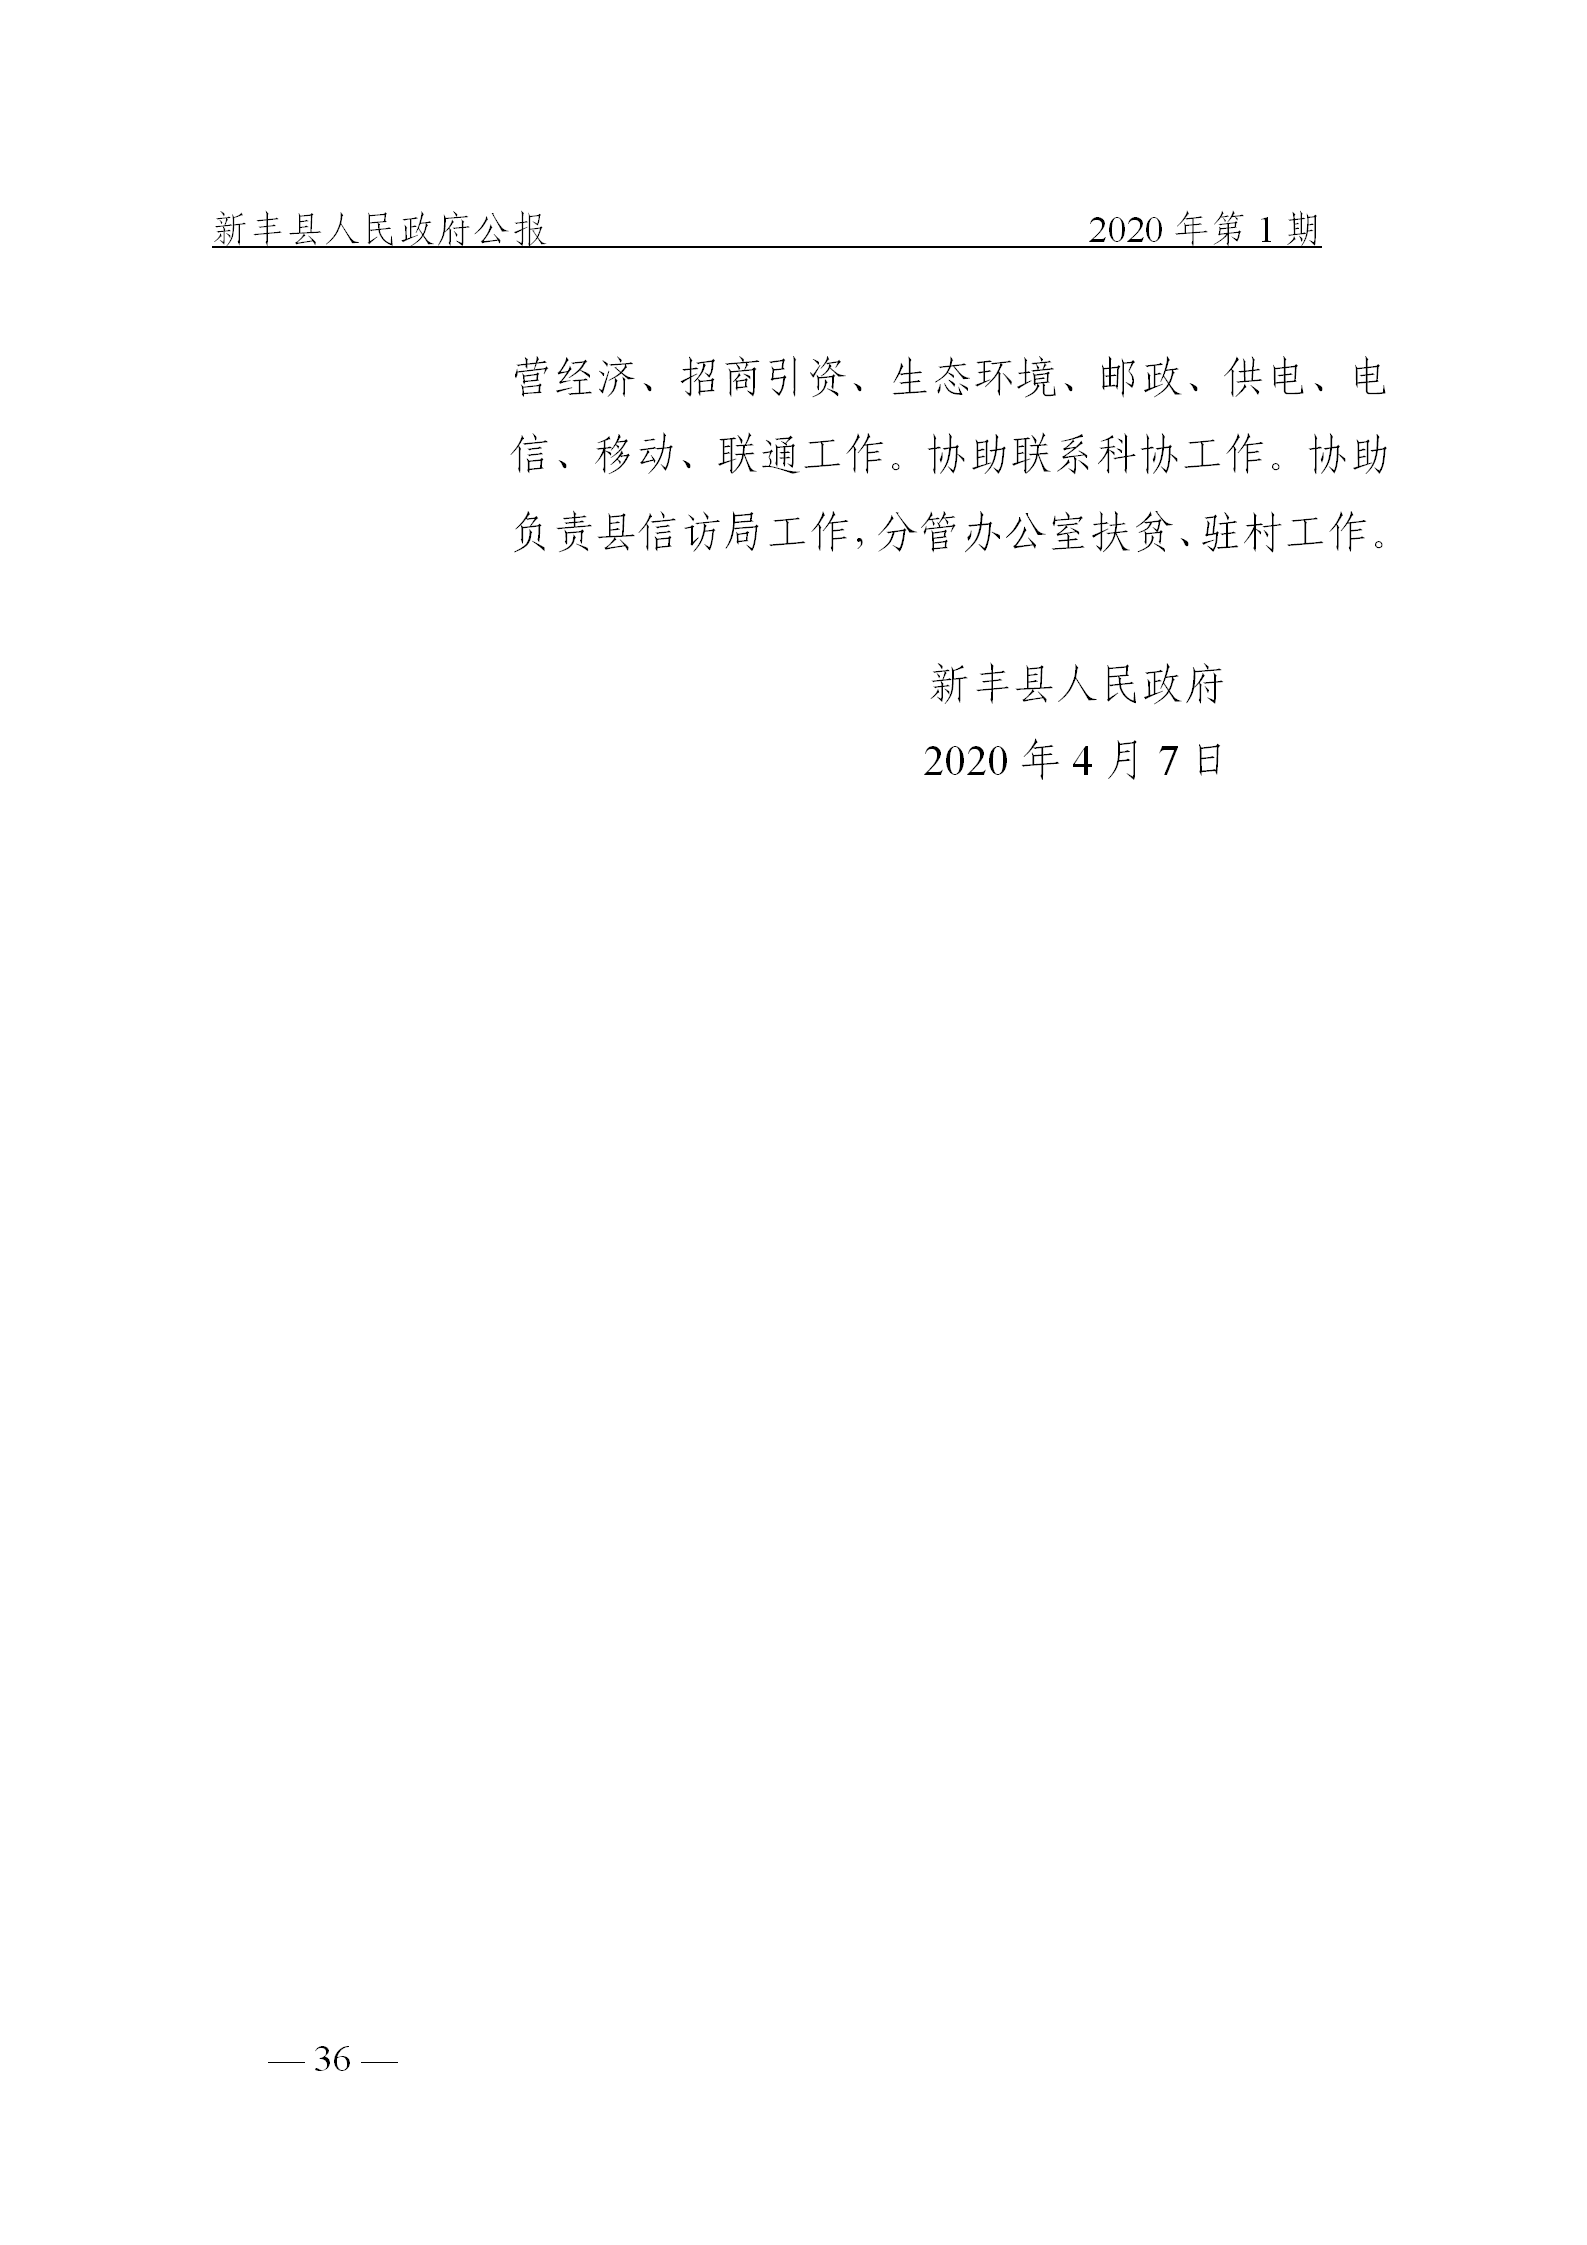 《新丰县人民政府公报》2020年第1期(1)_36.png